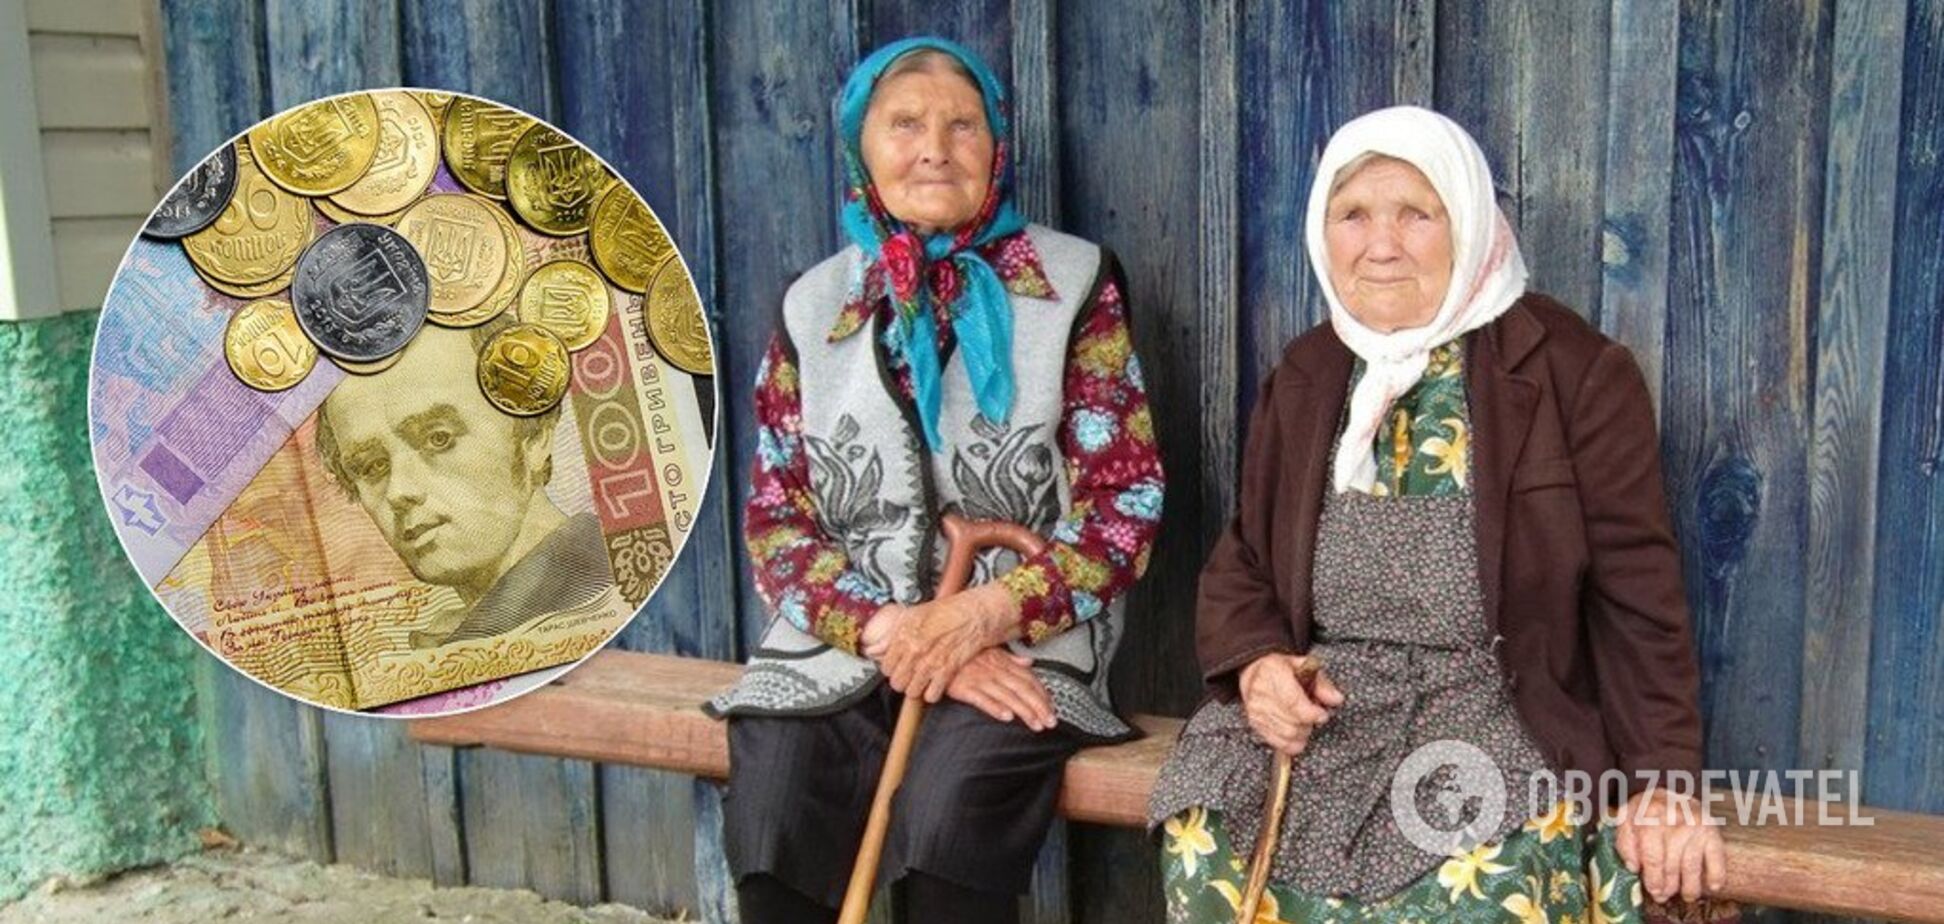 В Украине пенсии будут снижаться, а без выплат останется львиная доля работающих: как спасти свою старость